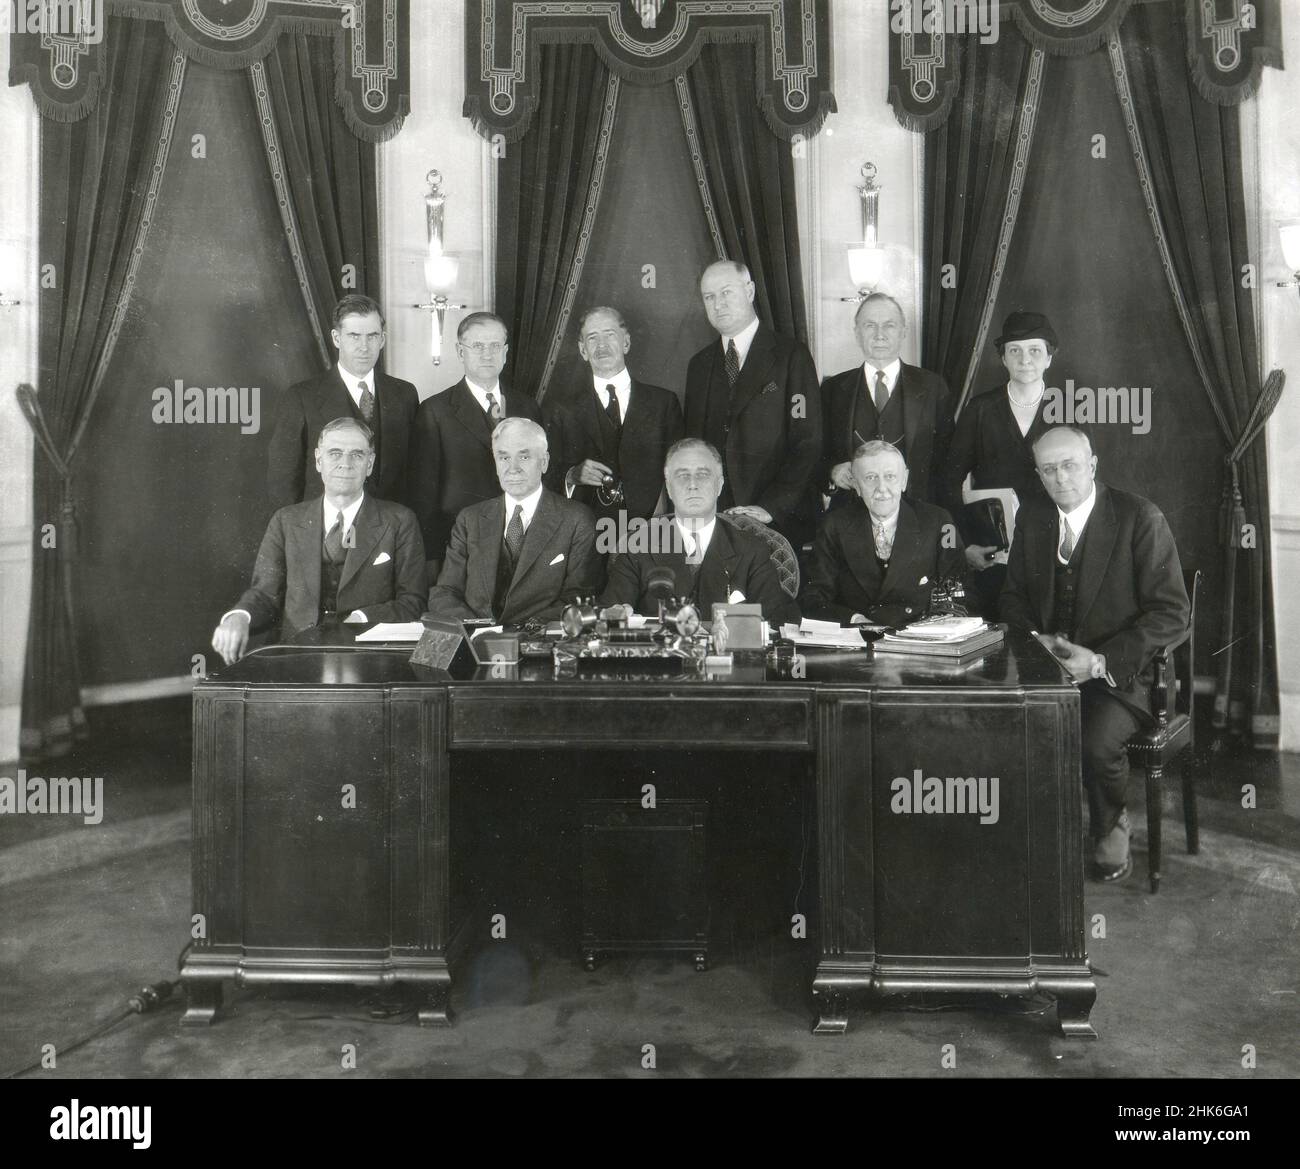 1933 - Presidente Franklin D. Roosevelt (centro) e il suo gabinetto del 1933. Seduto da sinistra a destra: George H. Dern, sec. Di guerra; Cordell Hull, sec di Stato; Roosevelt; W.H. Woodin, sec of Treasury; Homer S. Cummings, procuratore generale. Back Row da sinistra a destra: Henry A. Wallace, sec. Di Agricoltura; Harold L. Ickes, sec di interno; c.a. Swanson, Sez of Navy; James A. Farley, Postmaster Generale; D.C. Roper, Sec. Di Commercio; e Frances Perkins, sec. Di lavoro. Foto Stock